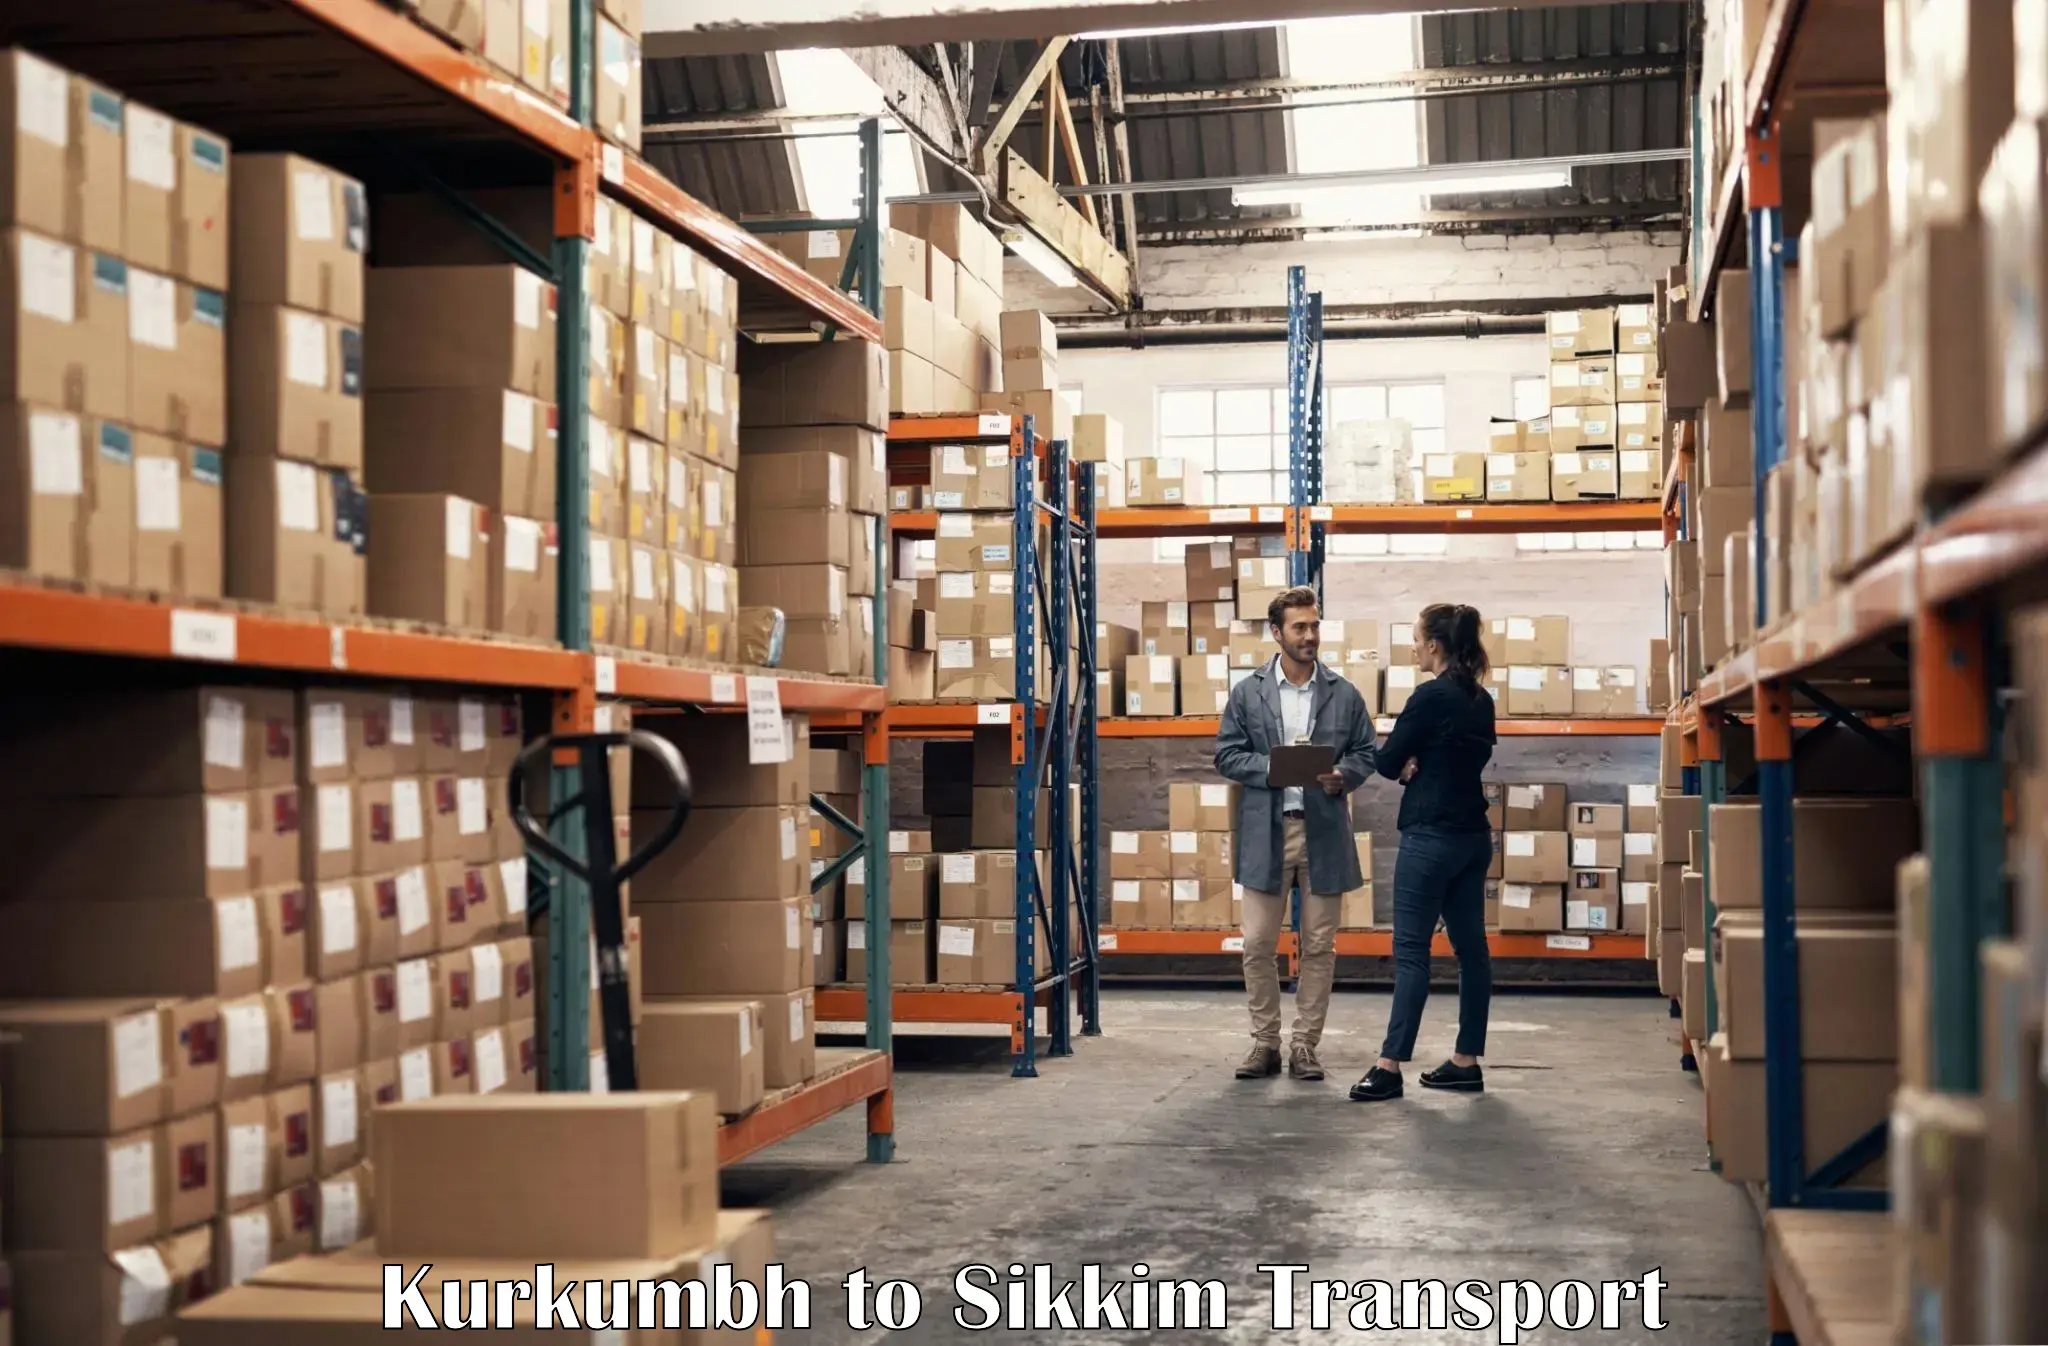 Shipping partner Kurkumbh to Sikkim